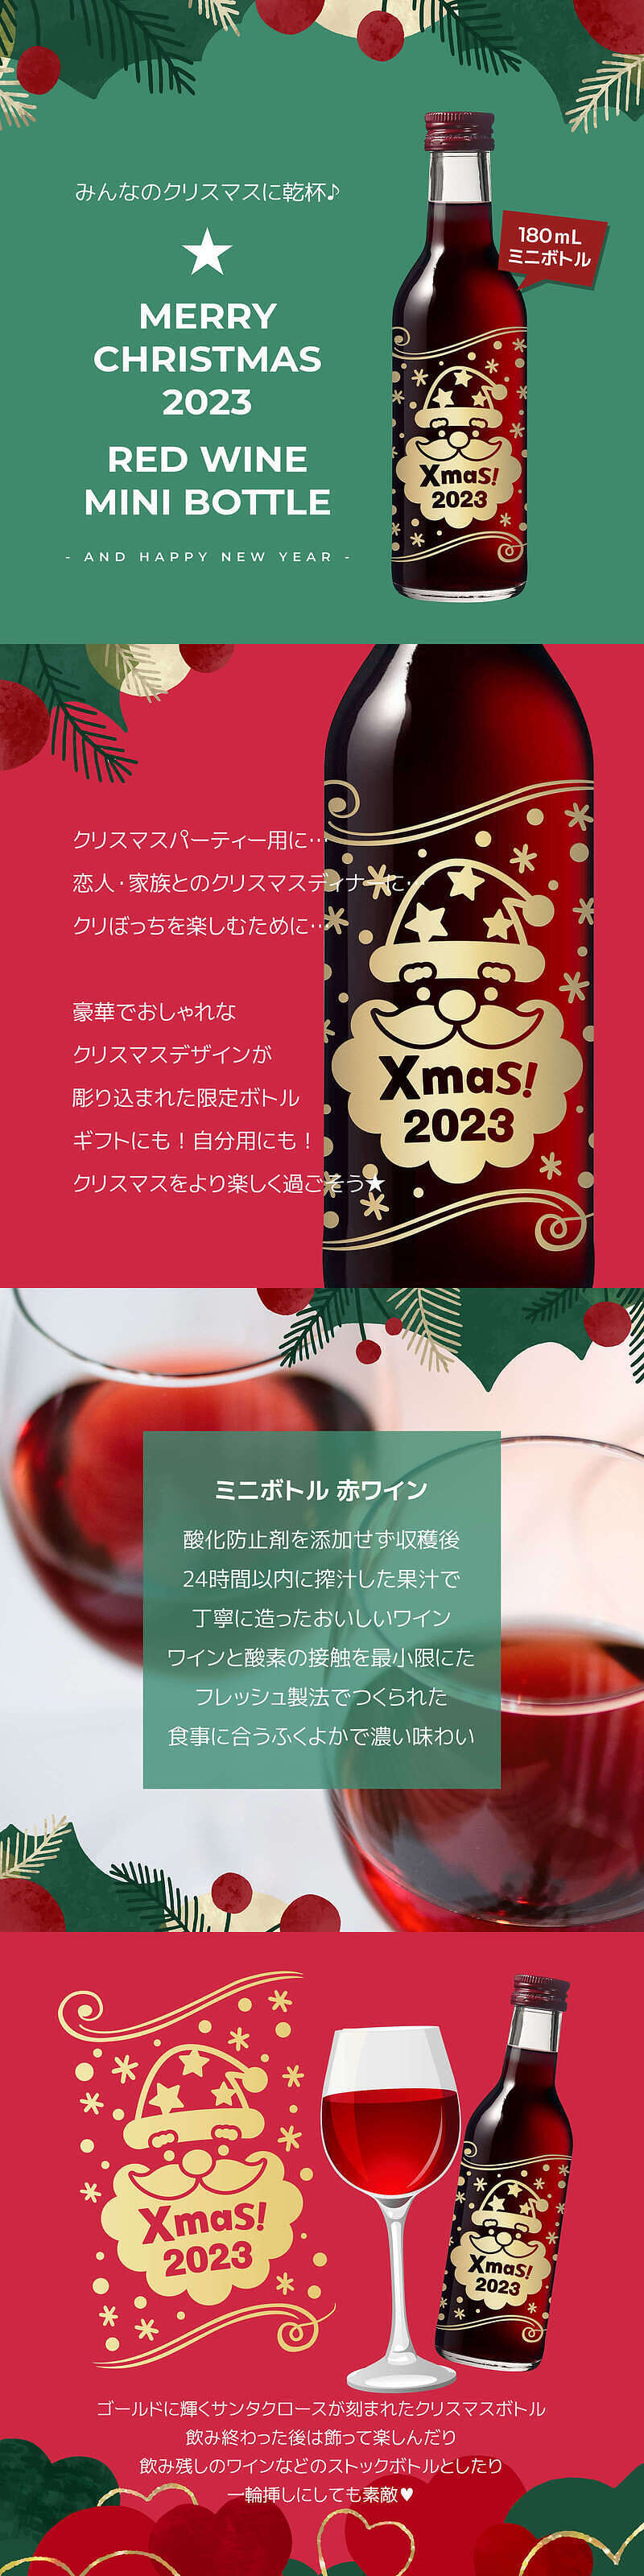 クリスマスサンタボトル 赤ワインの説明